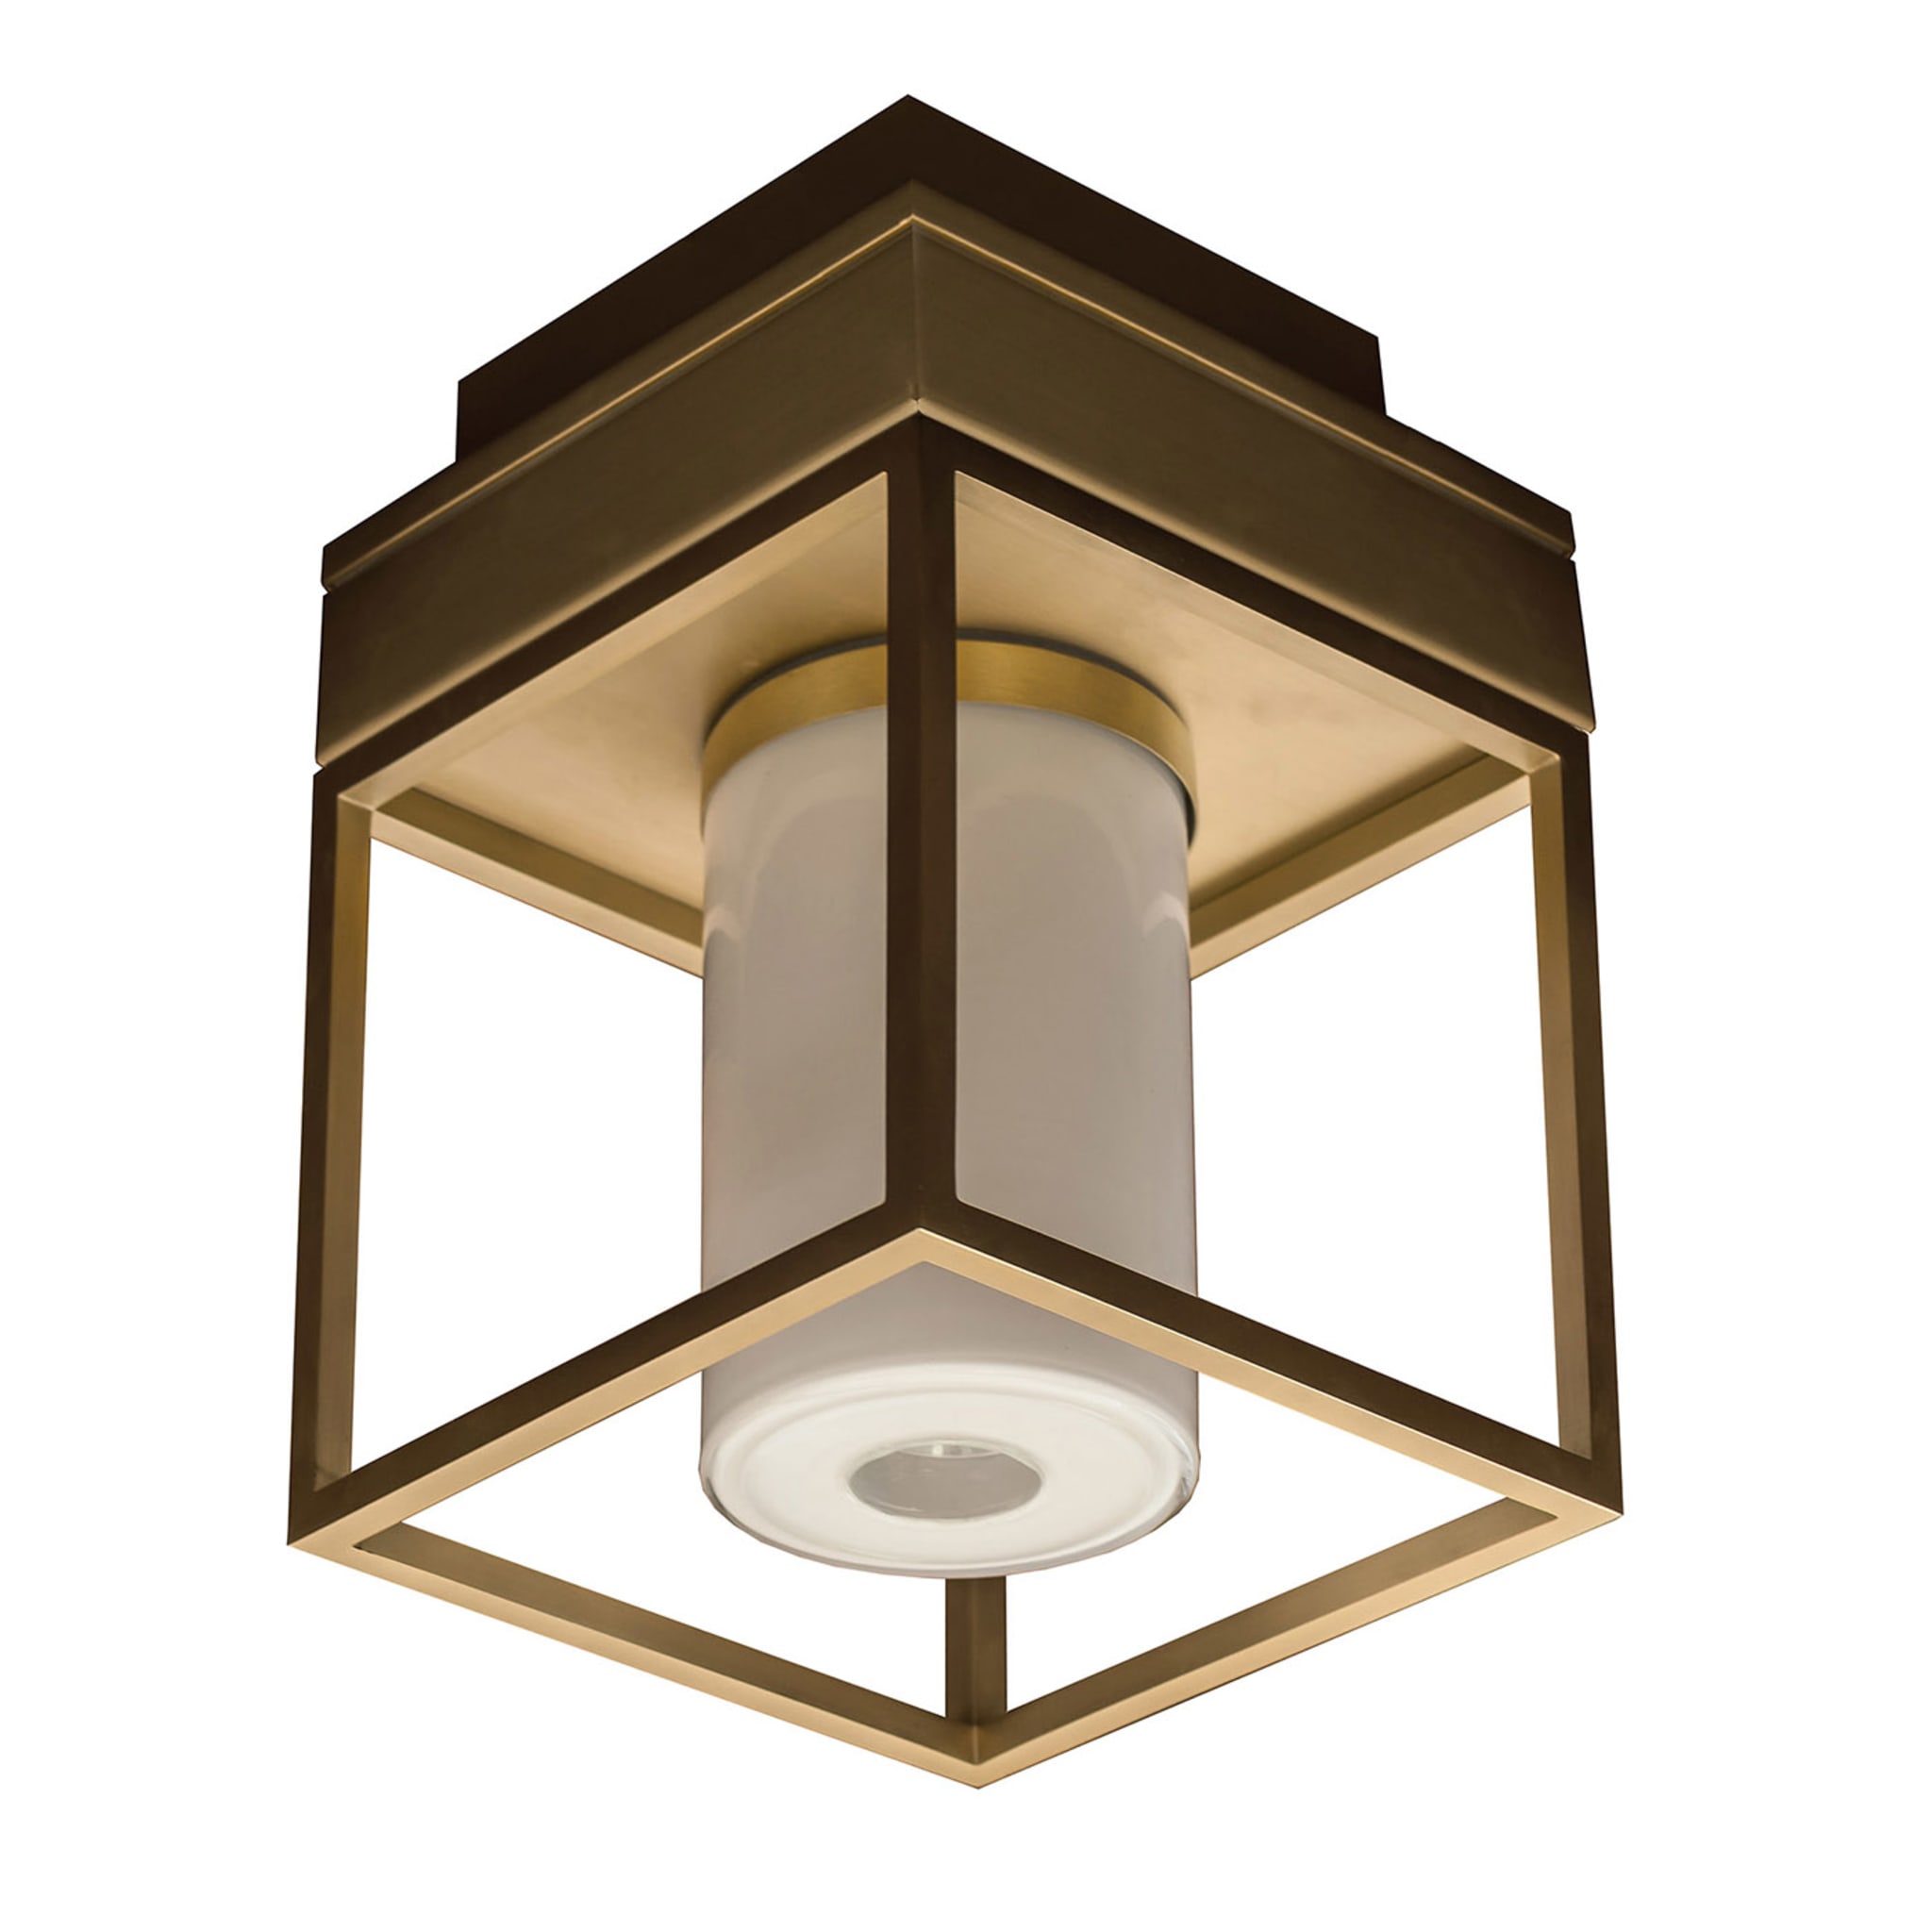 Noal Mini Ceiling Lamp design by Alberto Pasetti Bombardella - Main view